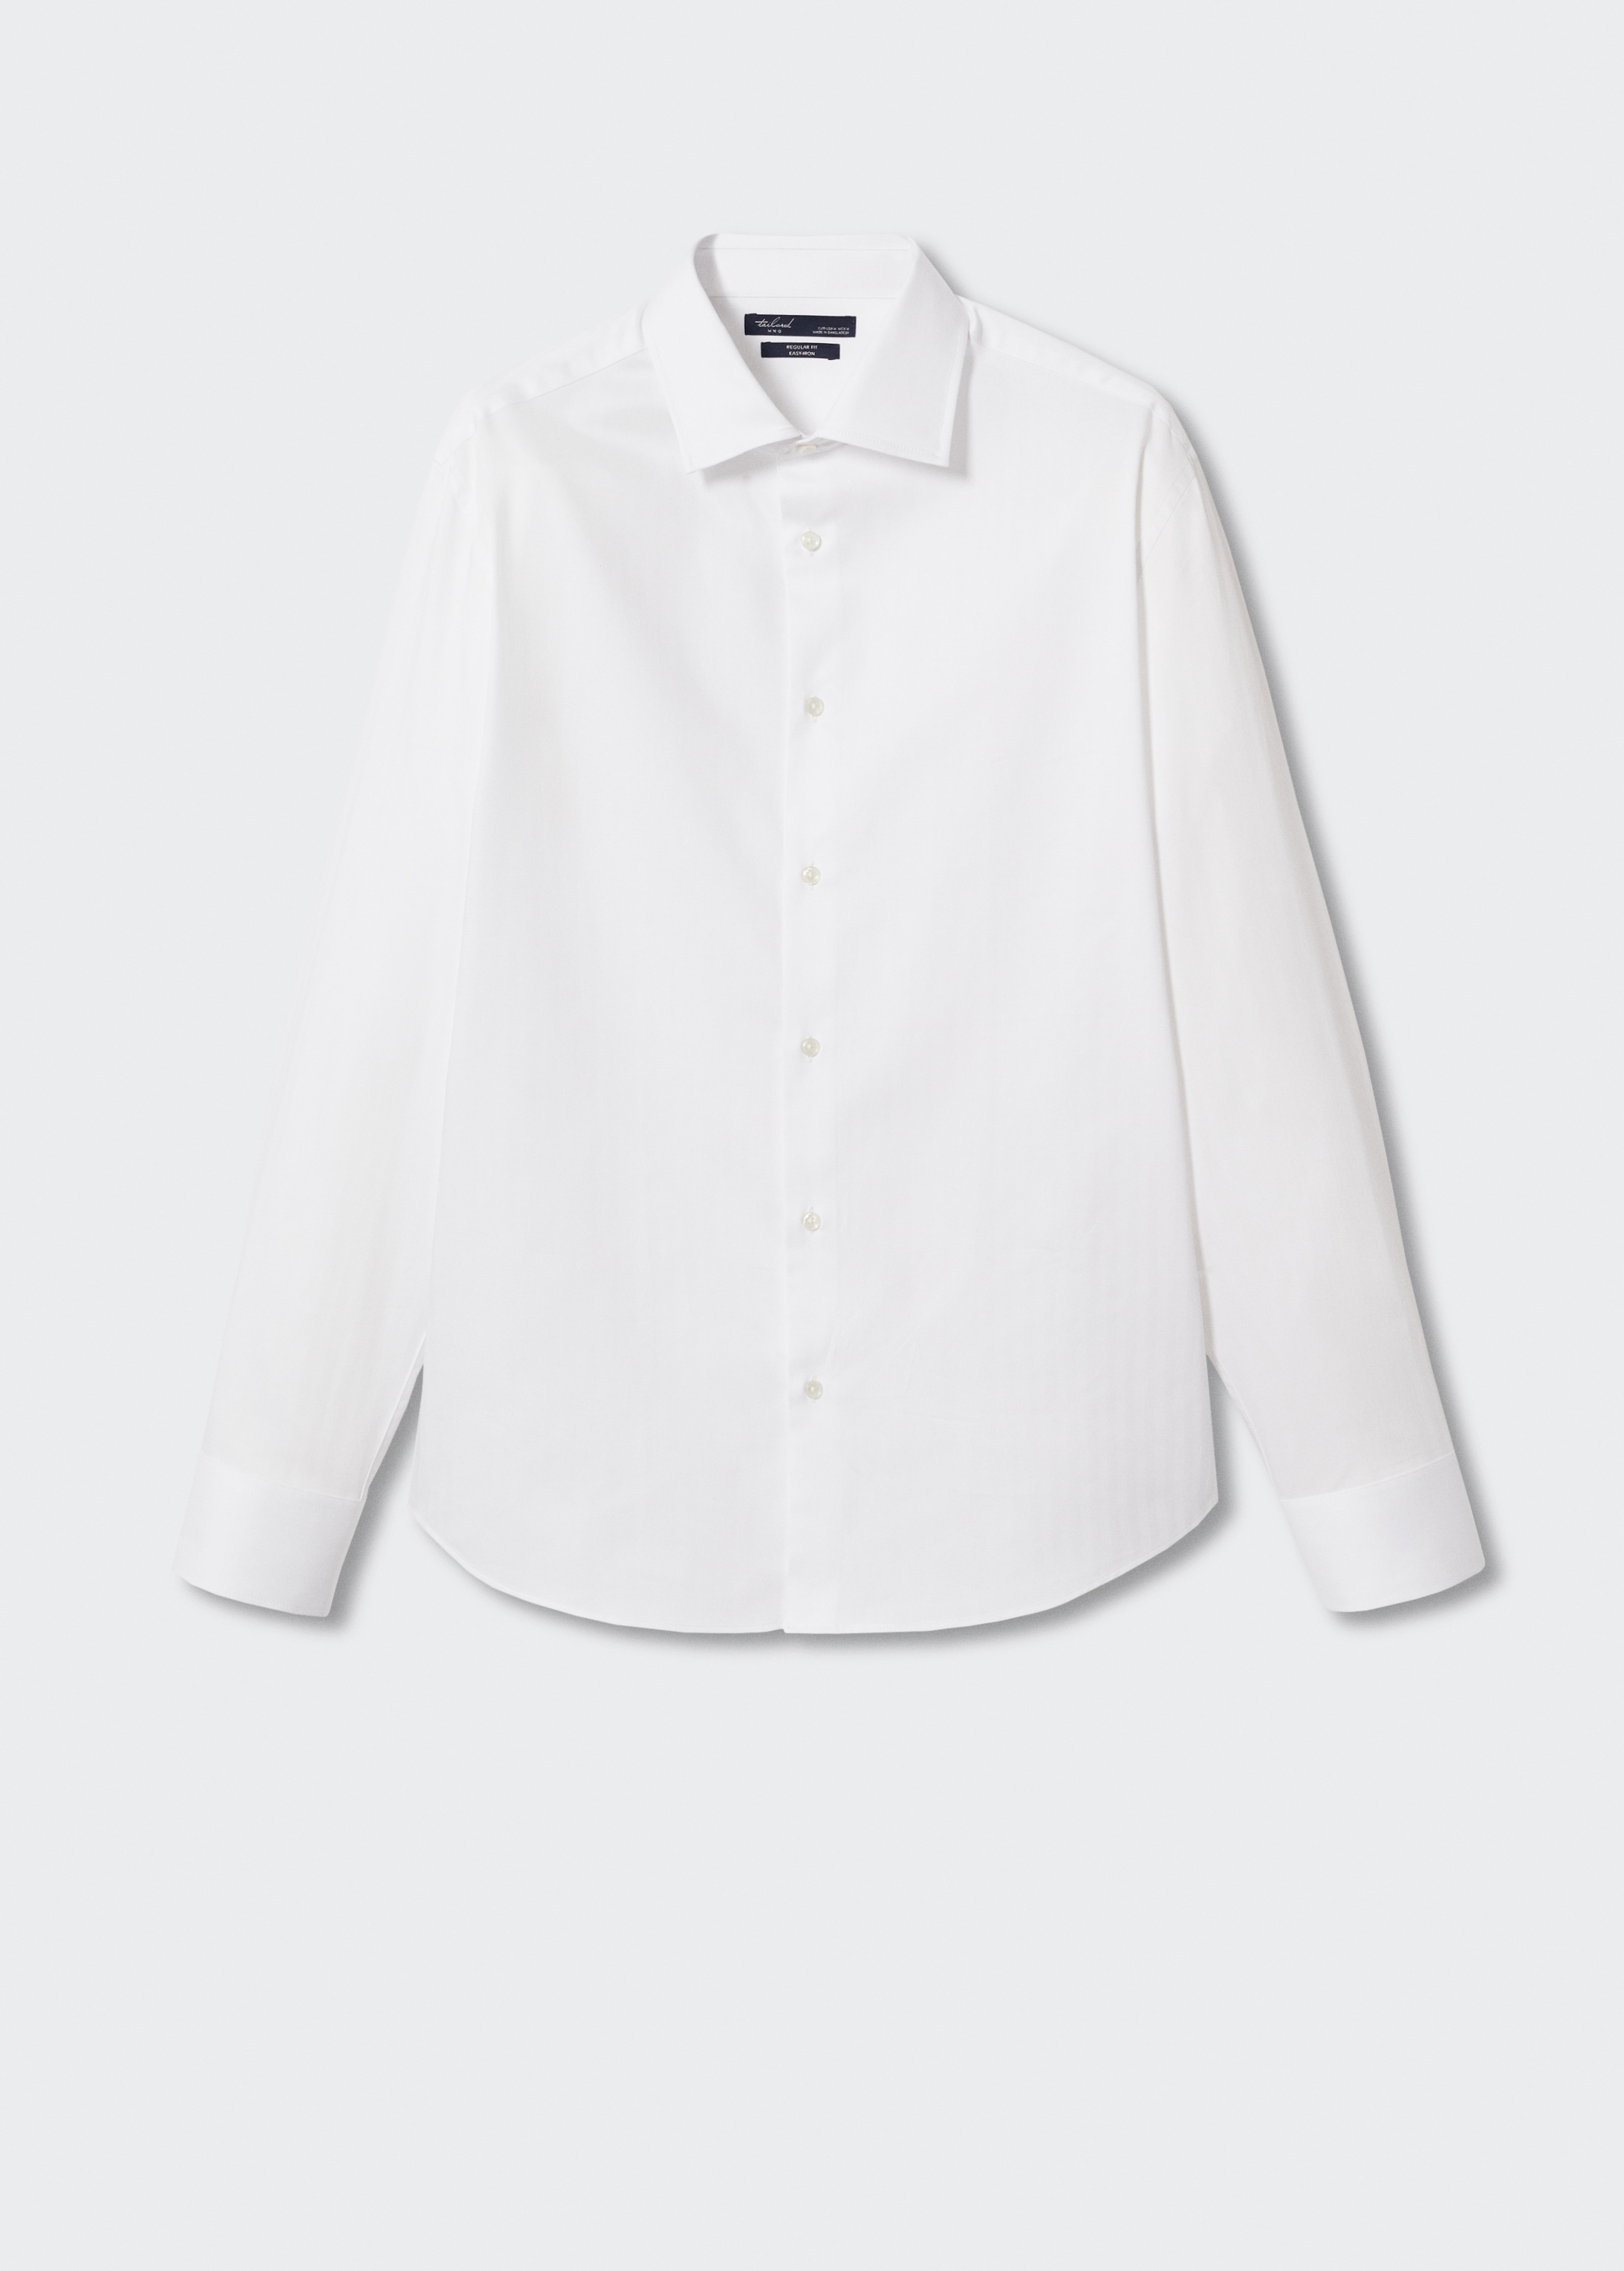 Camisa traje slim fit algodón - Artículo sin modelo